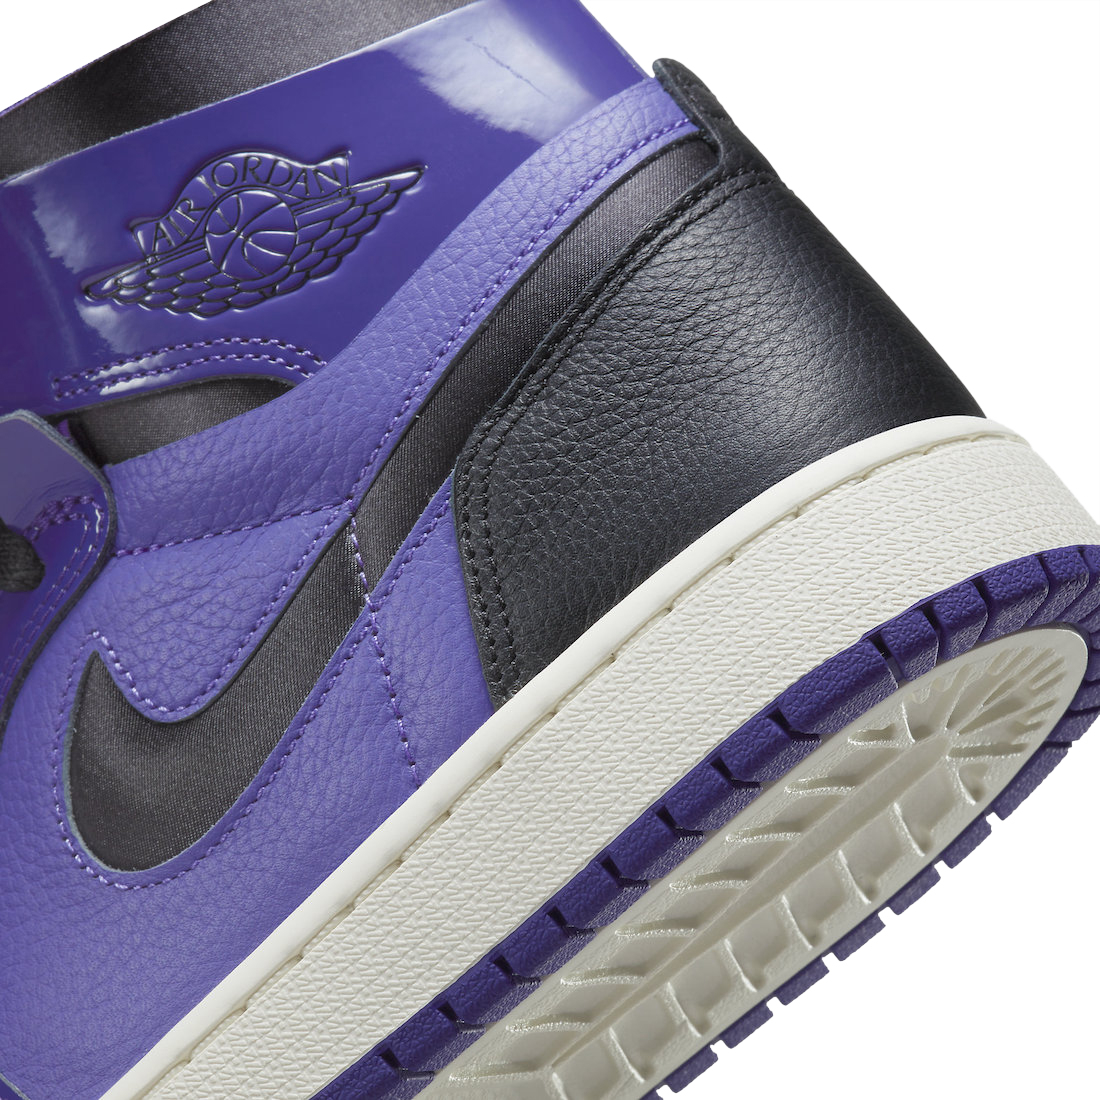 Air Jordan 1 Zoom Comfort Purple Patent CT0979-505